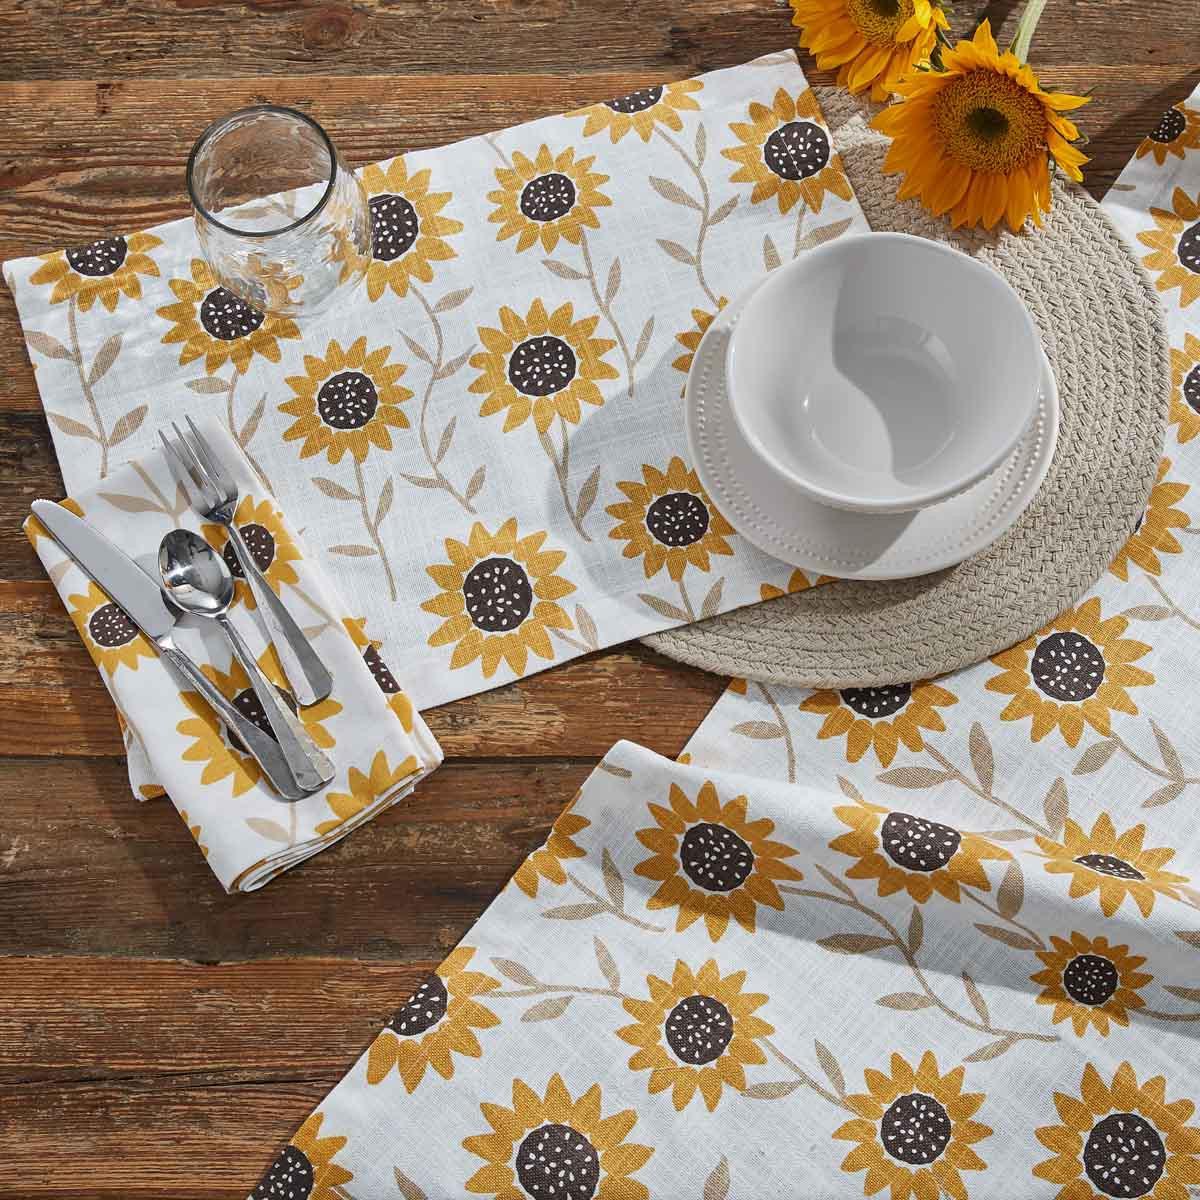 Park Design Sunflower Print Table Runner 54"